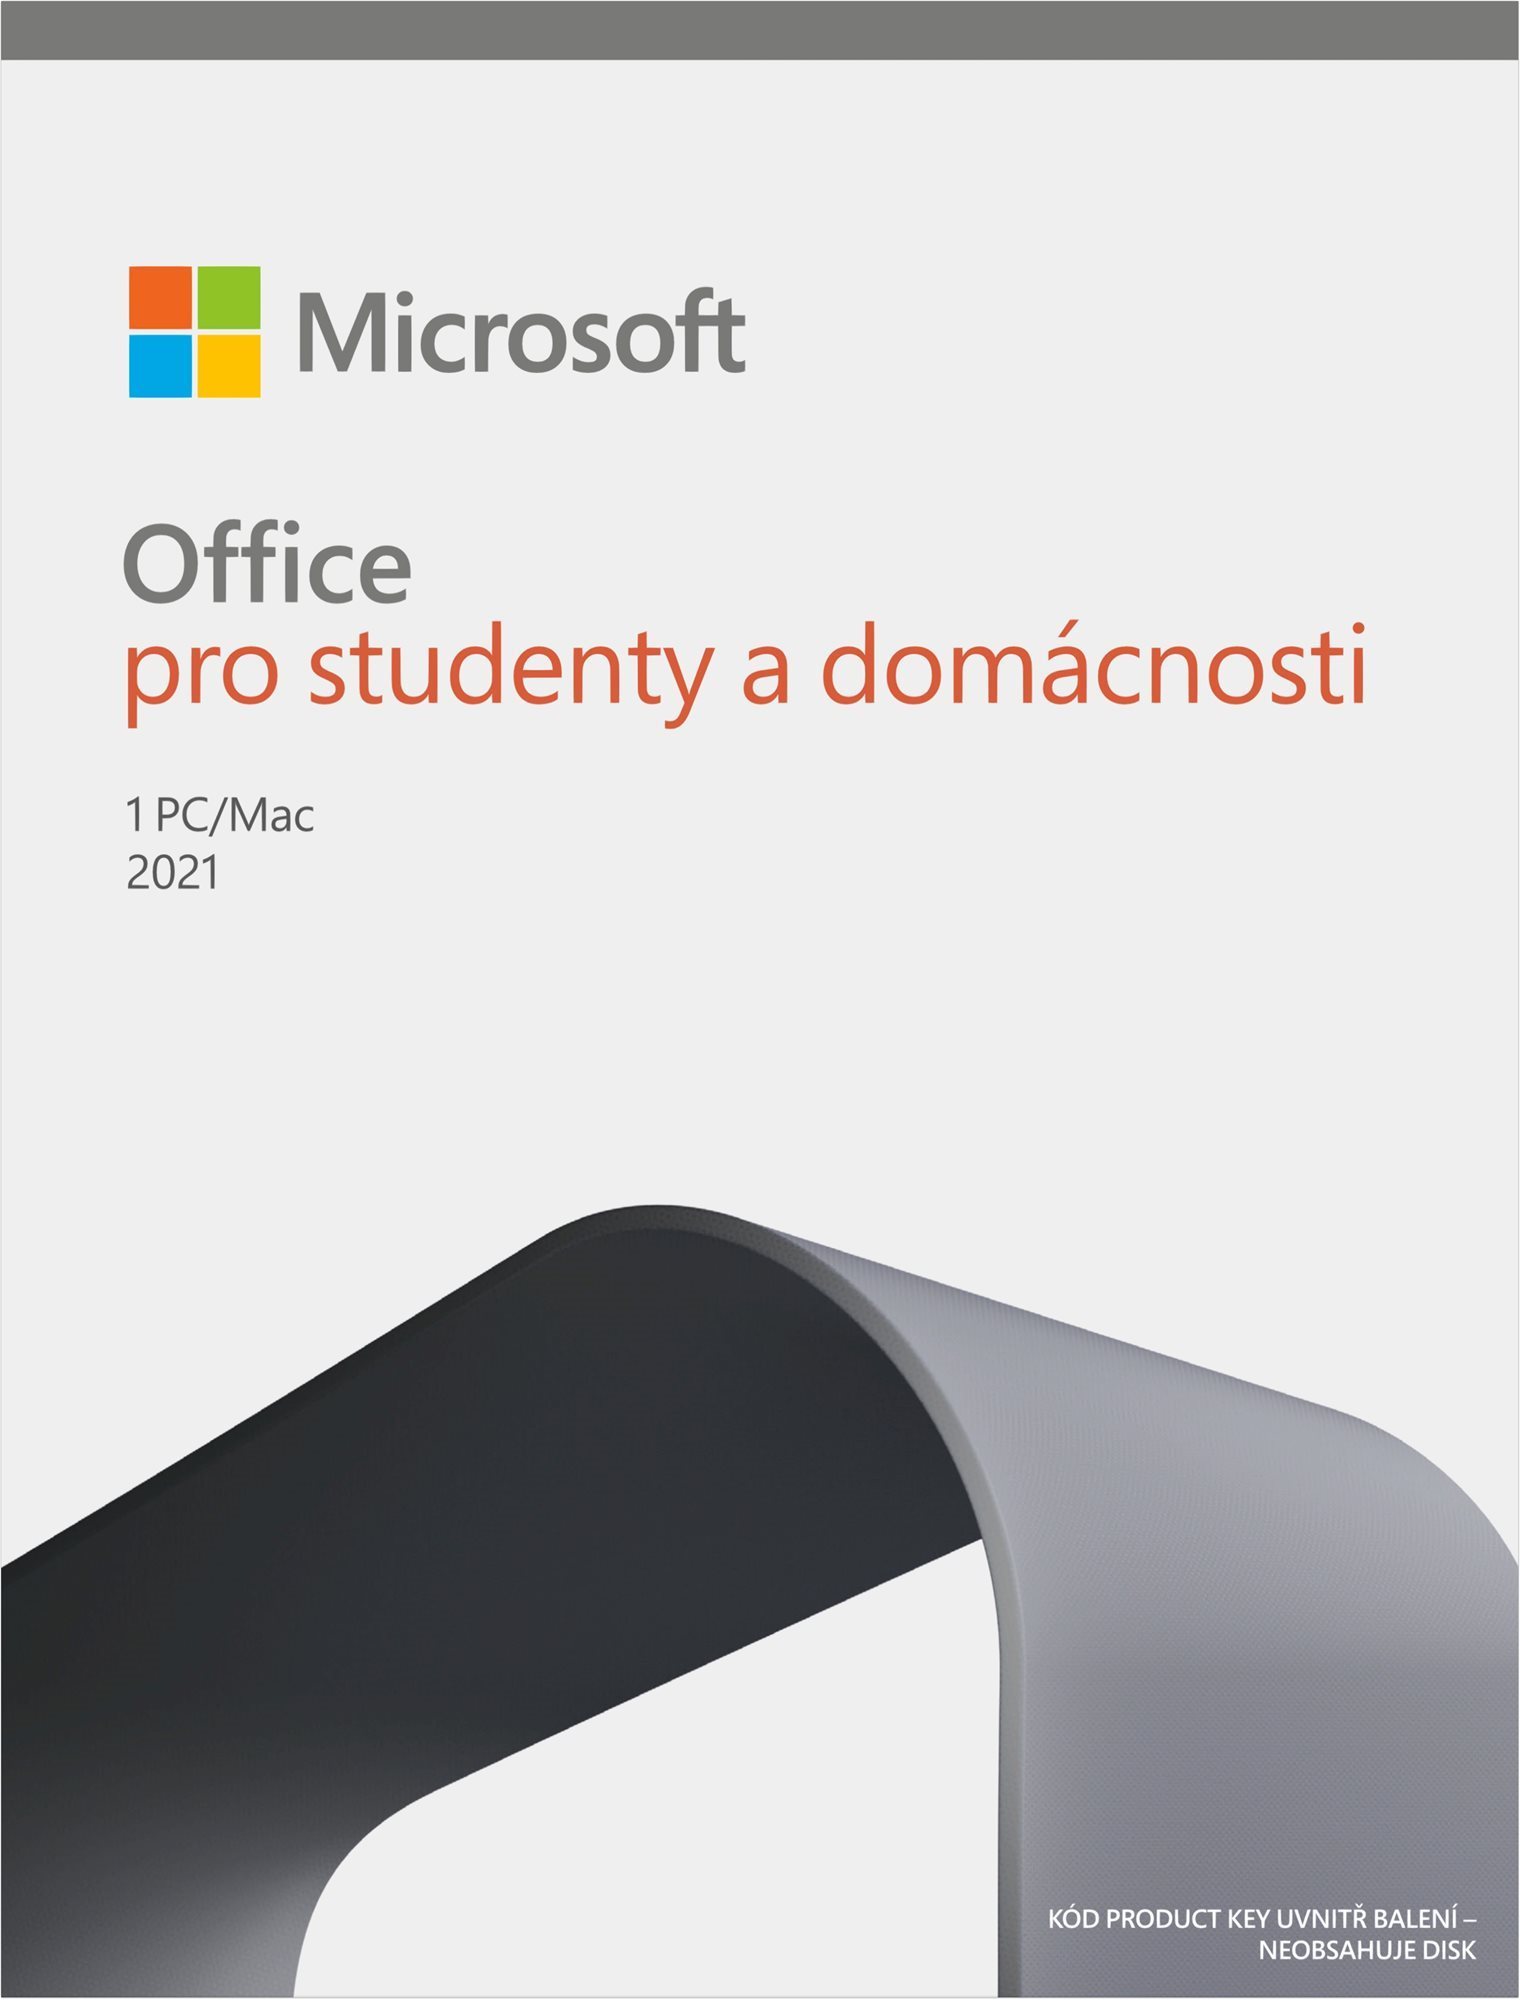 Microsoft Office 2021 otthoni és diákoknak (elektronikus licenc)